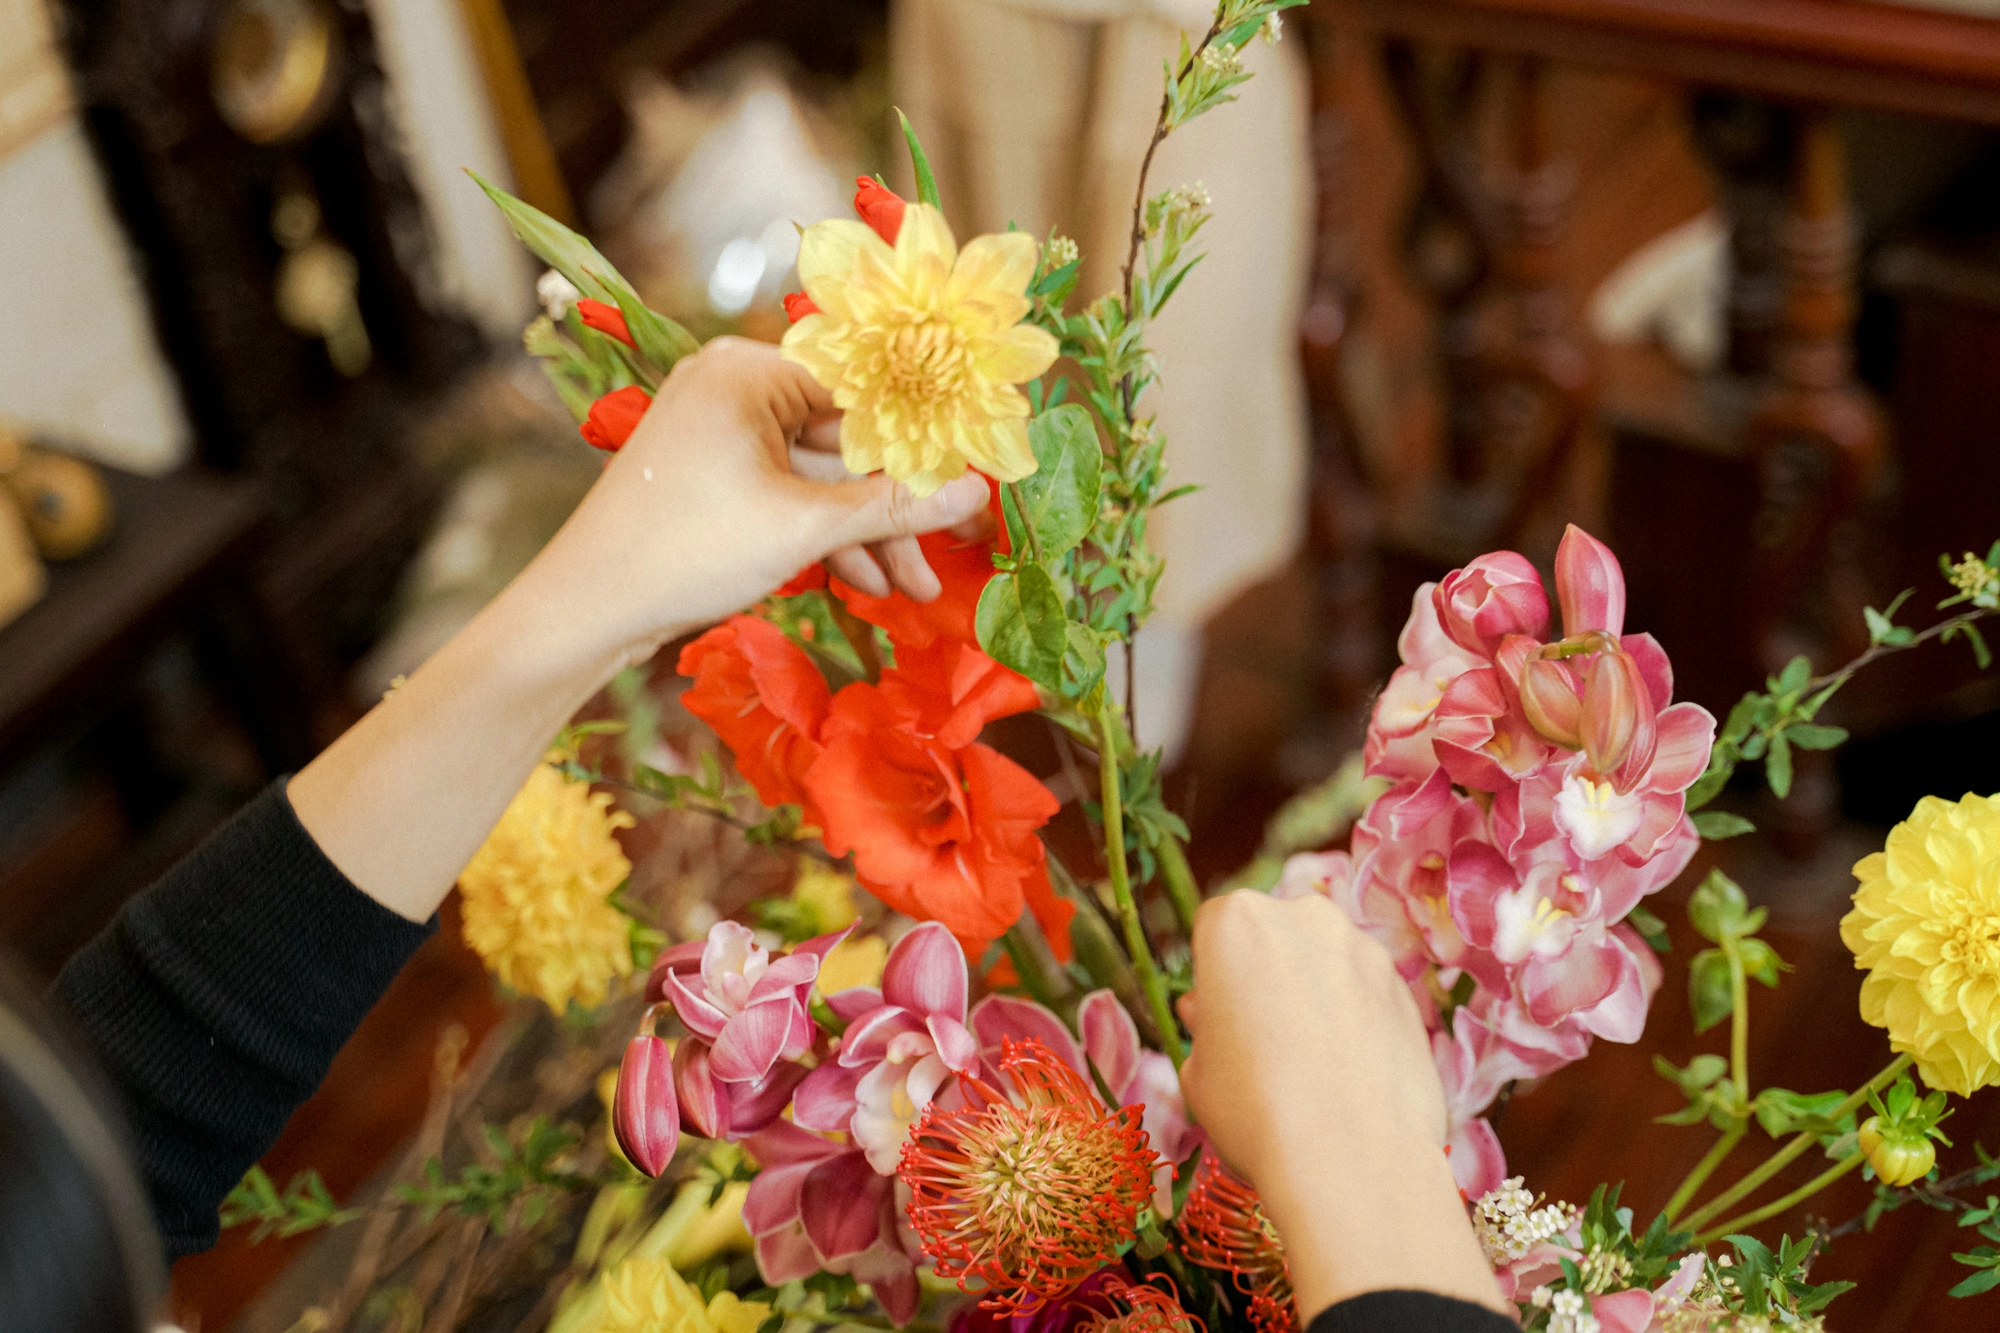 Hội chị em thích các loại hoa mới lạ thì cùng thử cách cắm bình hoa Tết này, đảm bảo ai cũng khen - Ảnh 5.